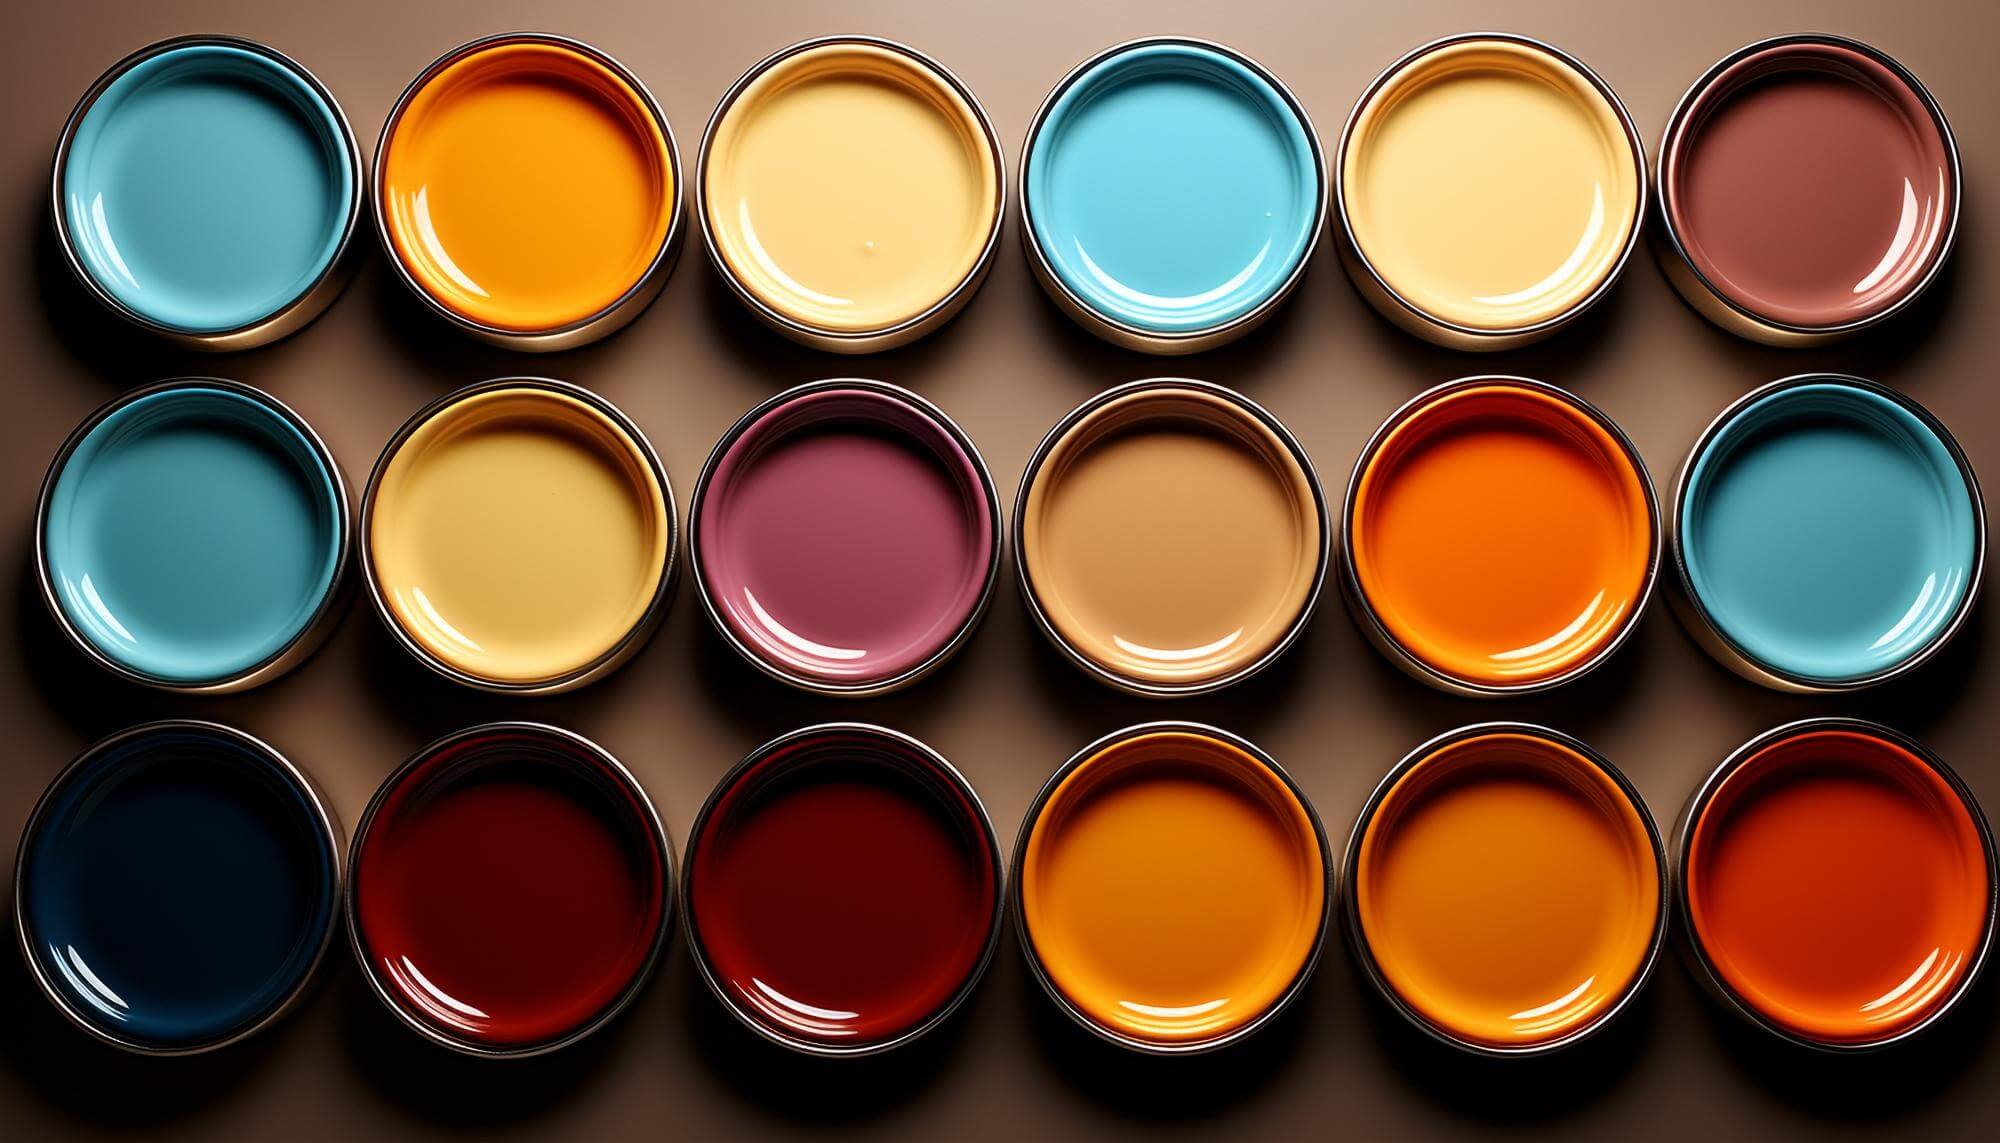 Natürliche Wandfarben in vielen kleinen Farbdosen